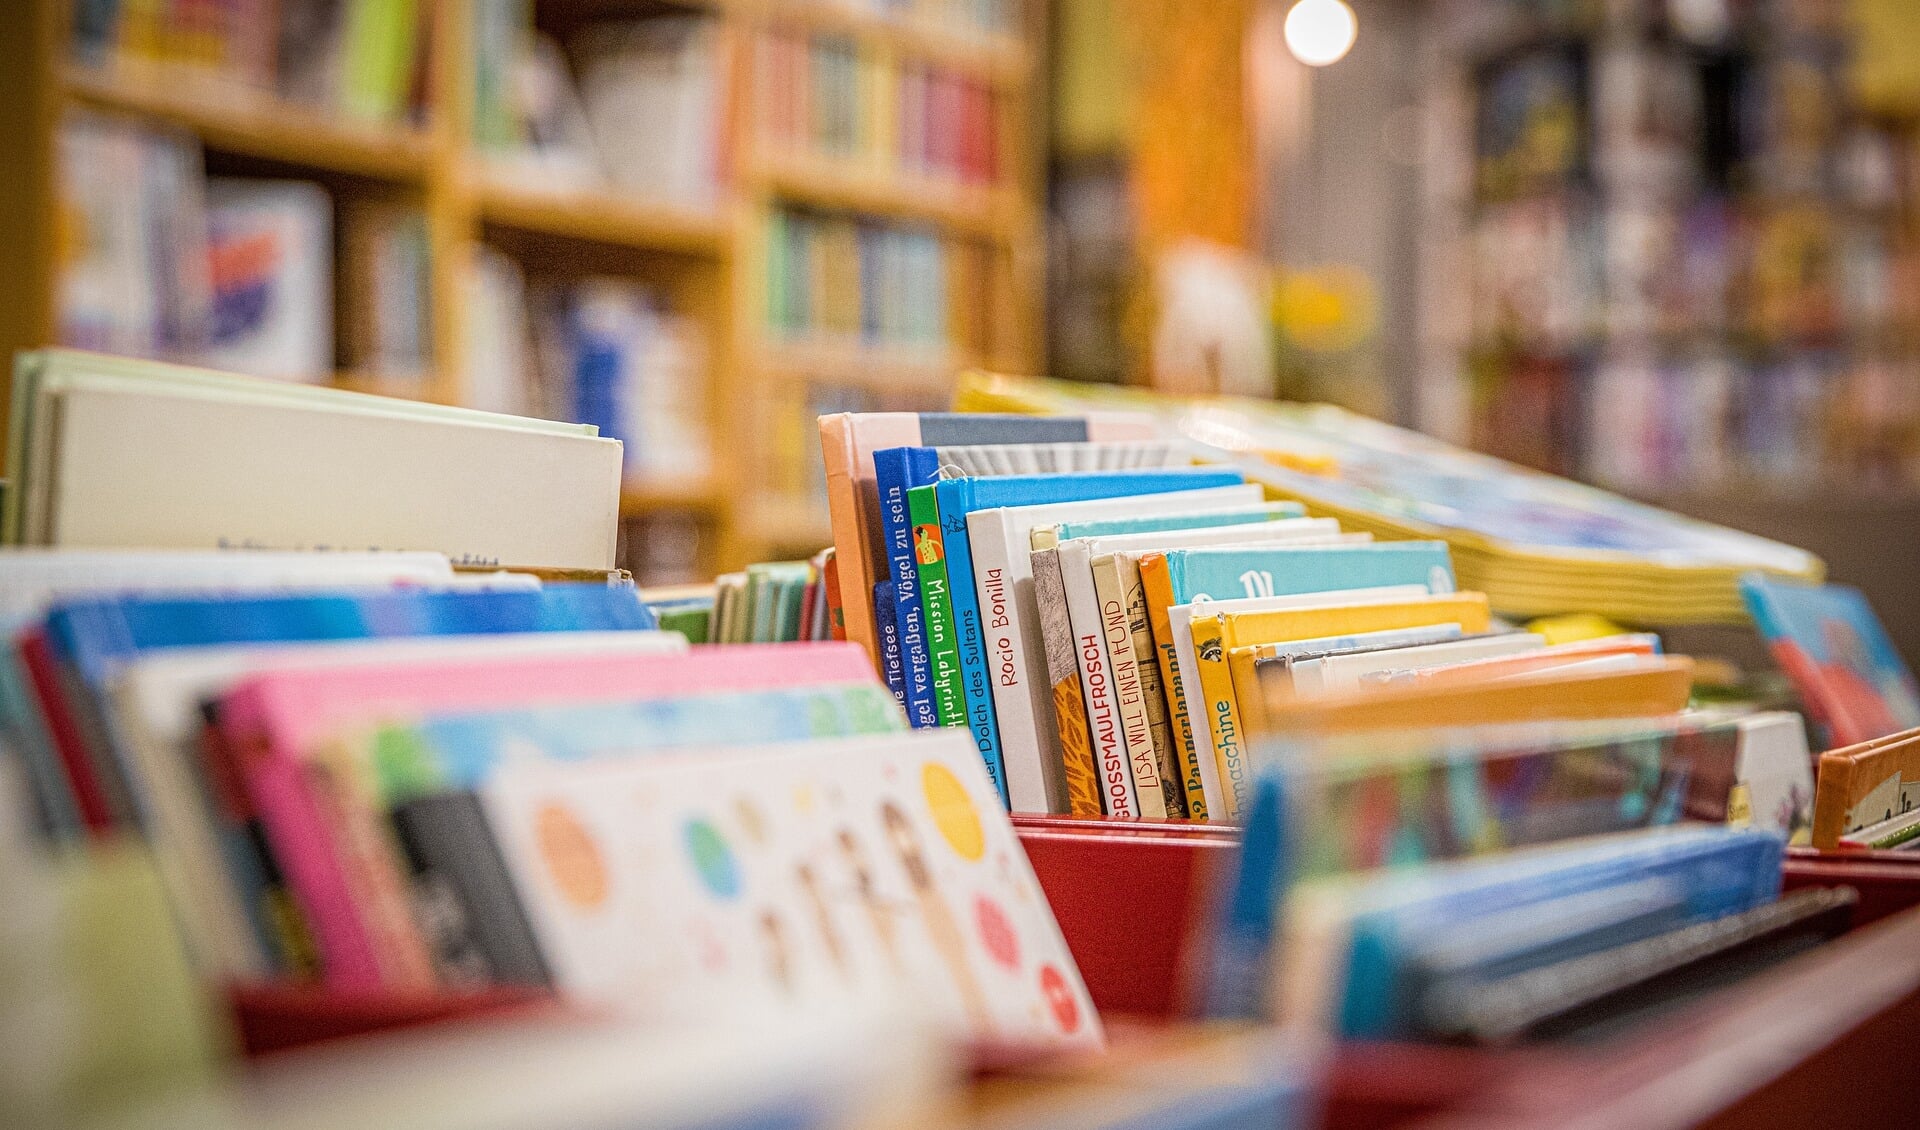 Het voortzetten van de bibliotheek op school wordt door het college gezien als een belangrijke zaak. 